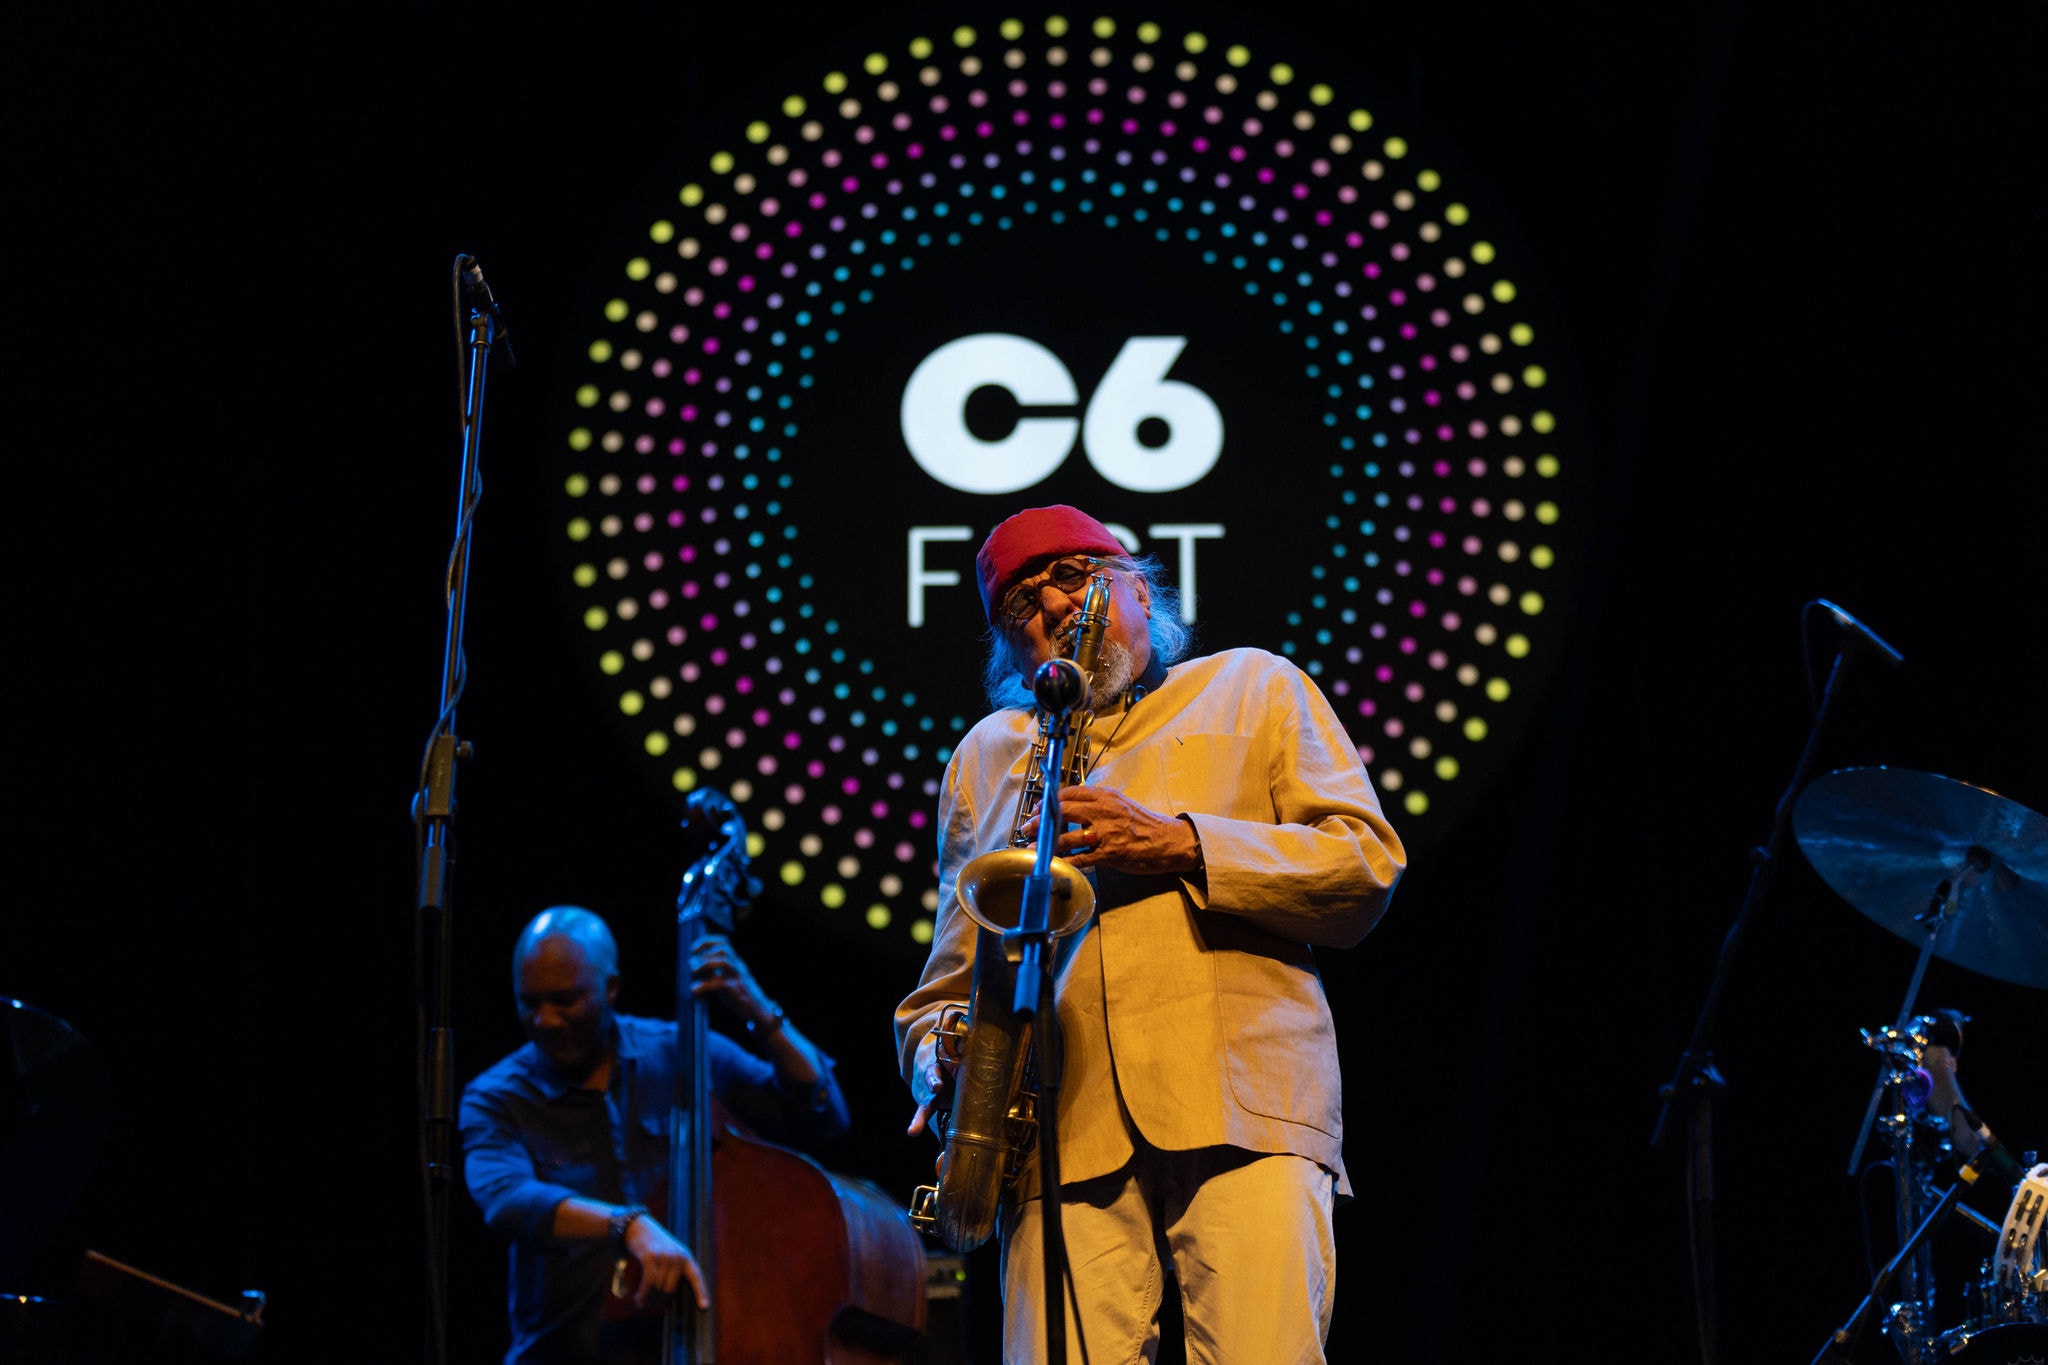 Aos 86 anos, Charles Lloyd e seu quarteto deram um espetáculo de jazz no C6 Fest